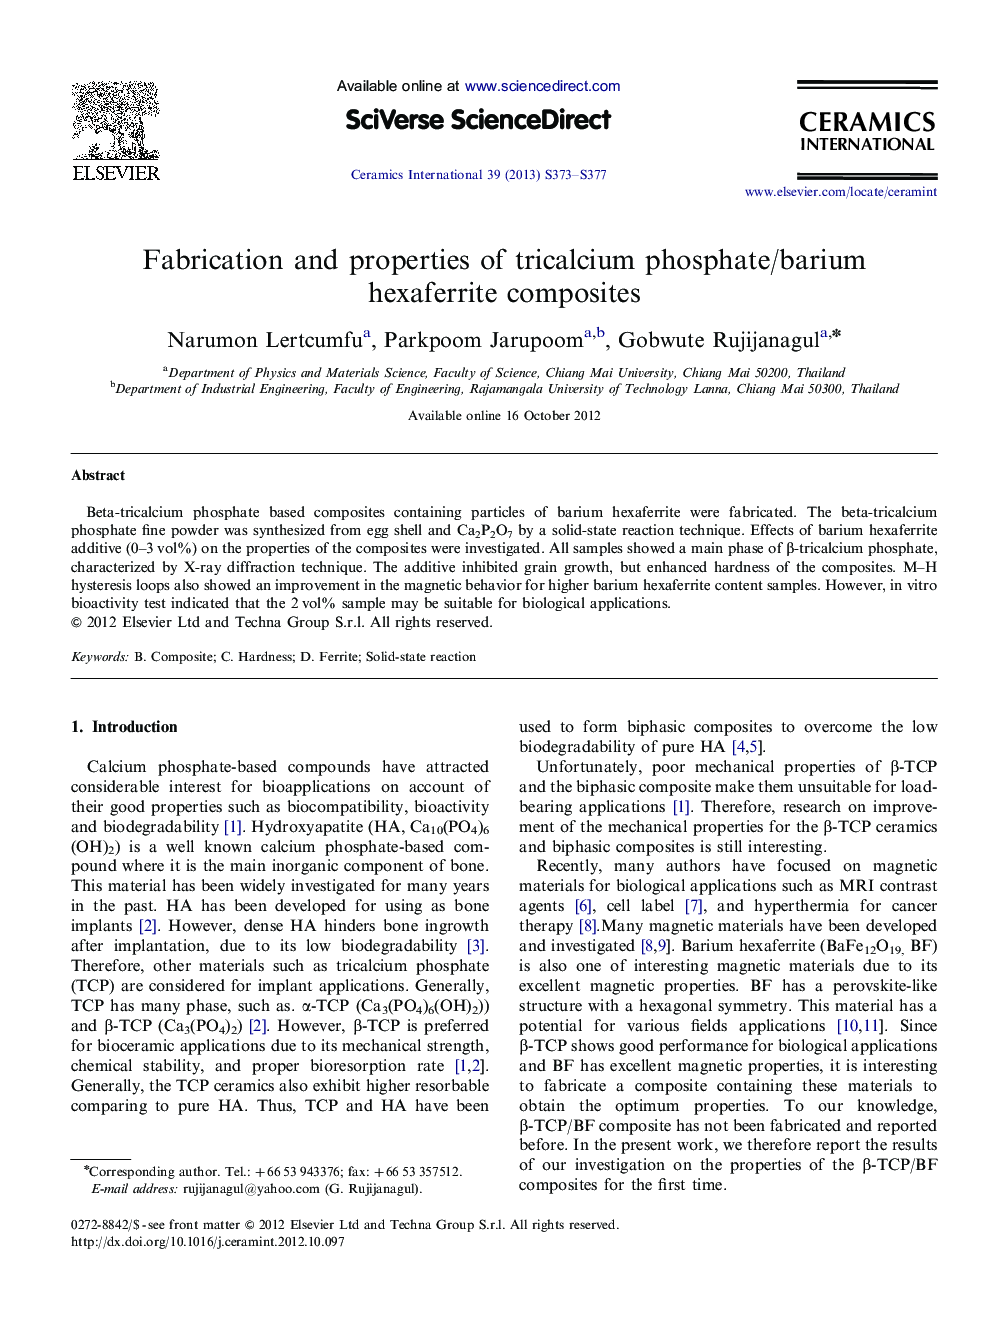 Fabrication and properties of tricalcium phosphate/barium hexaferrite composites